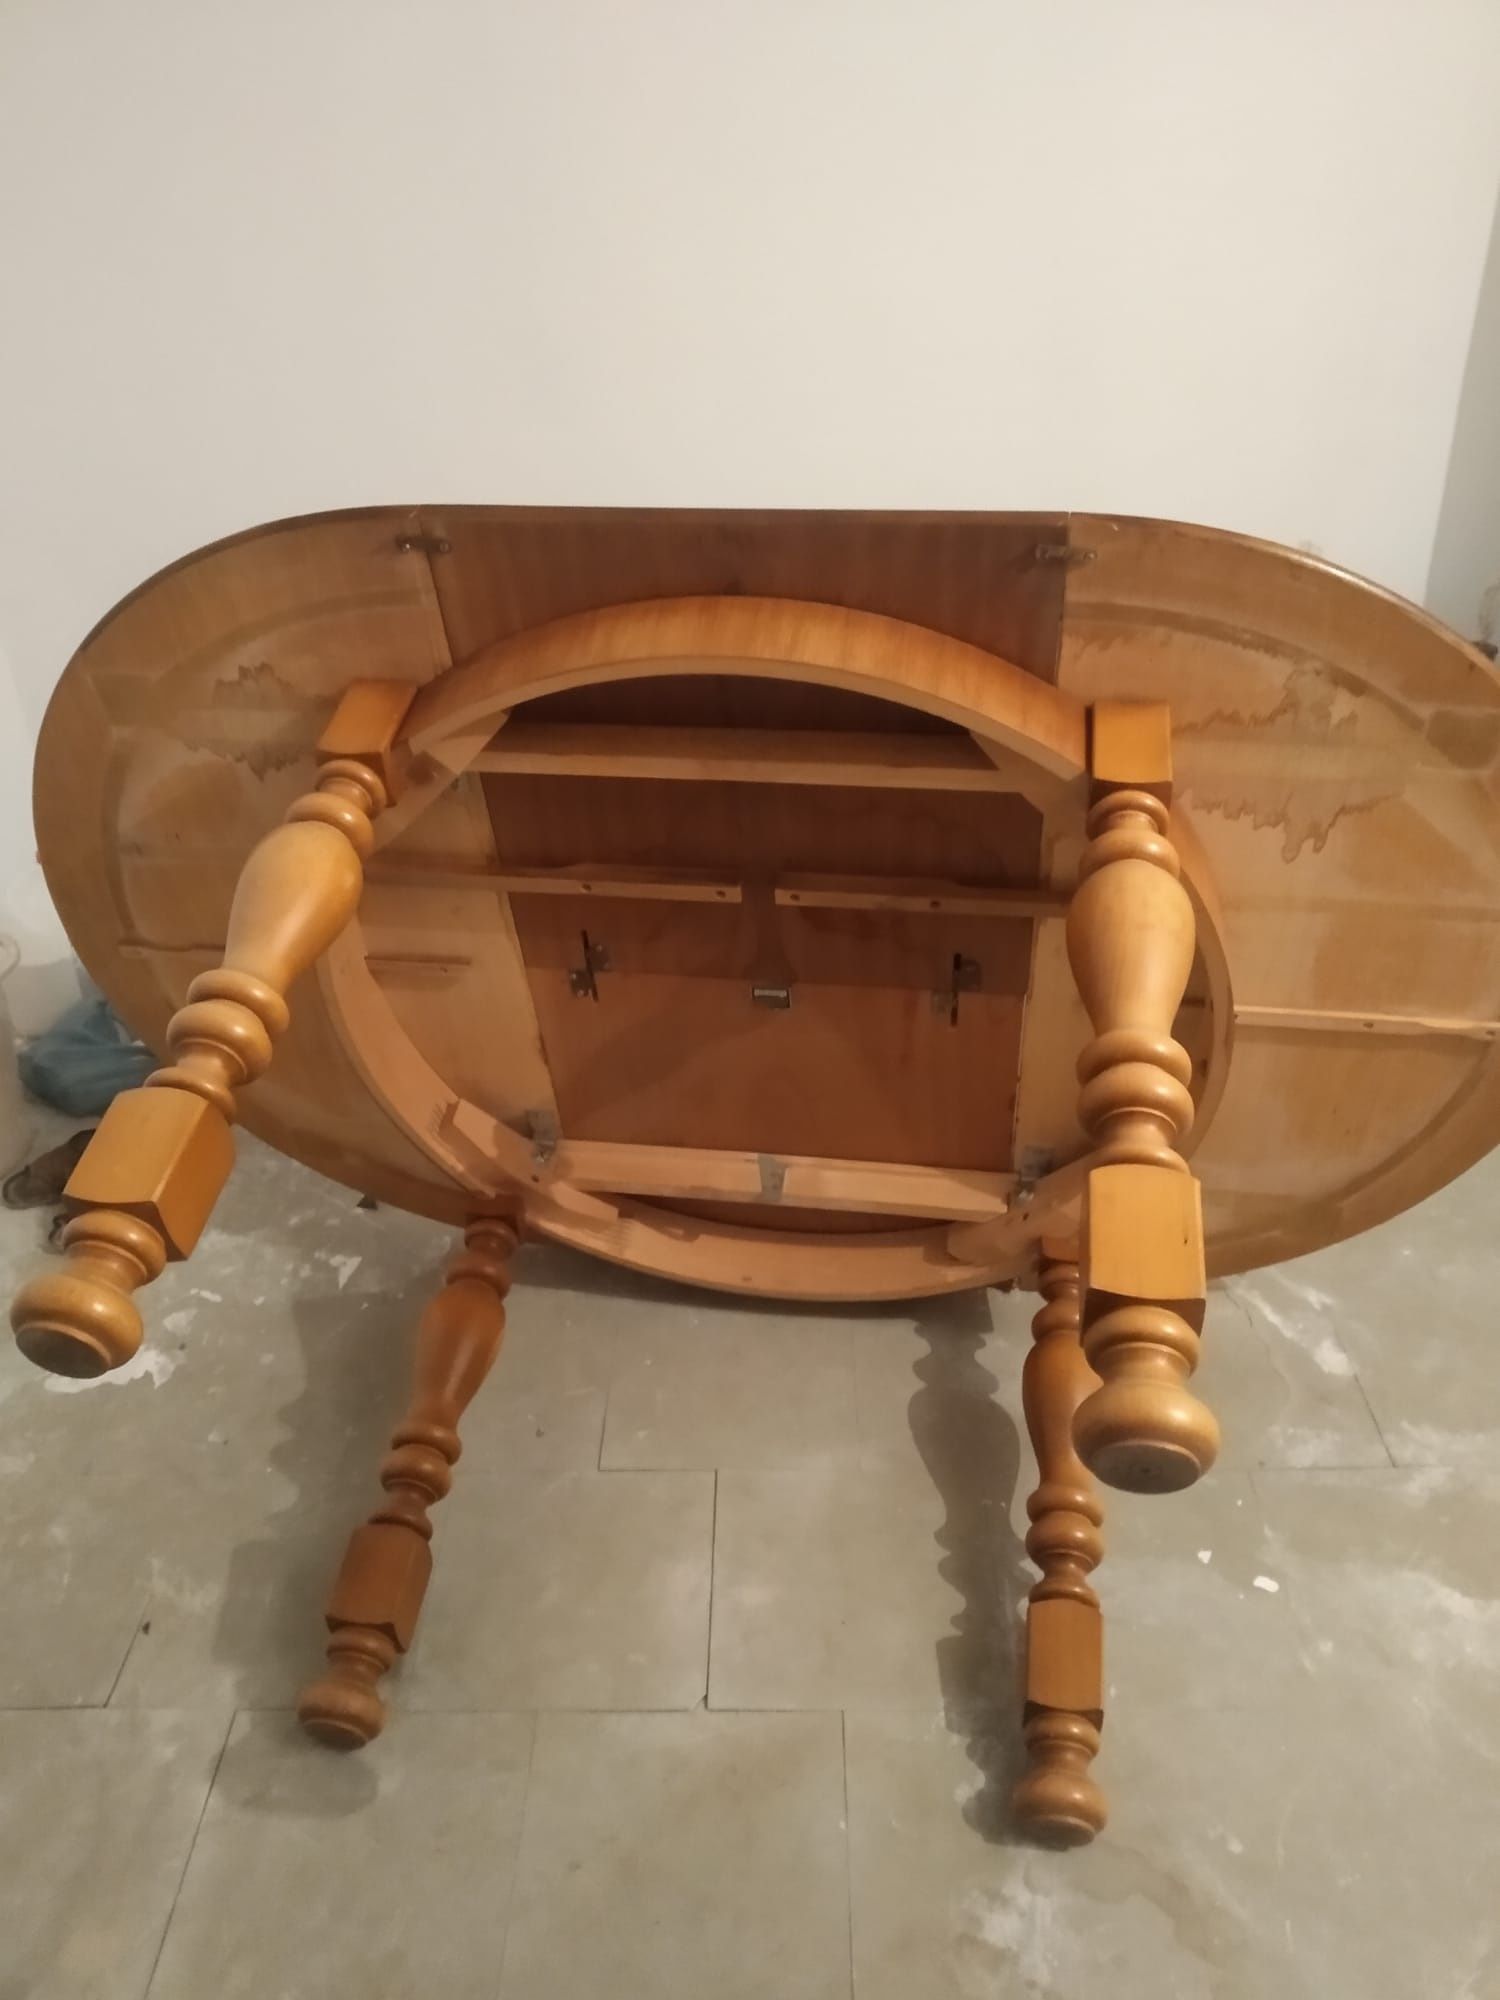 Stół drewniany, rozkładany, okrągły, 110cm